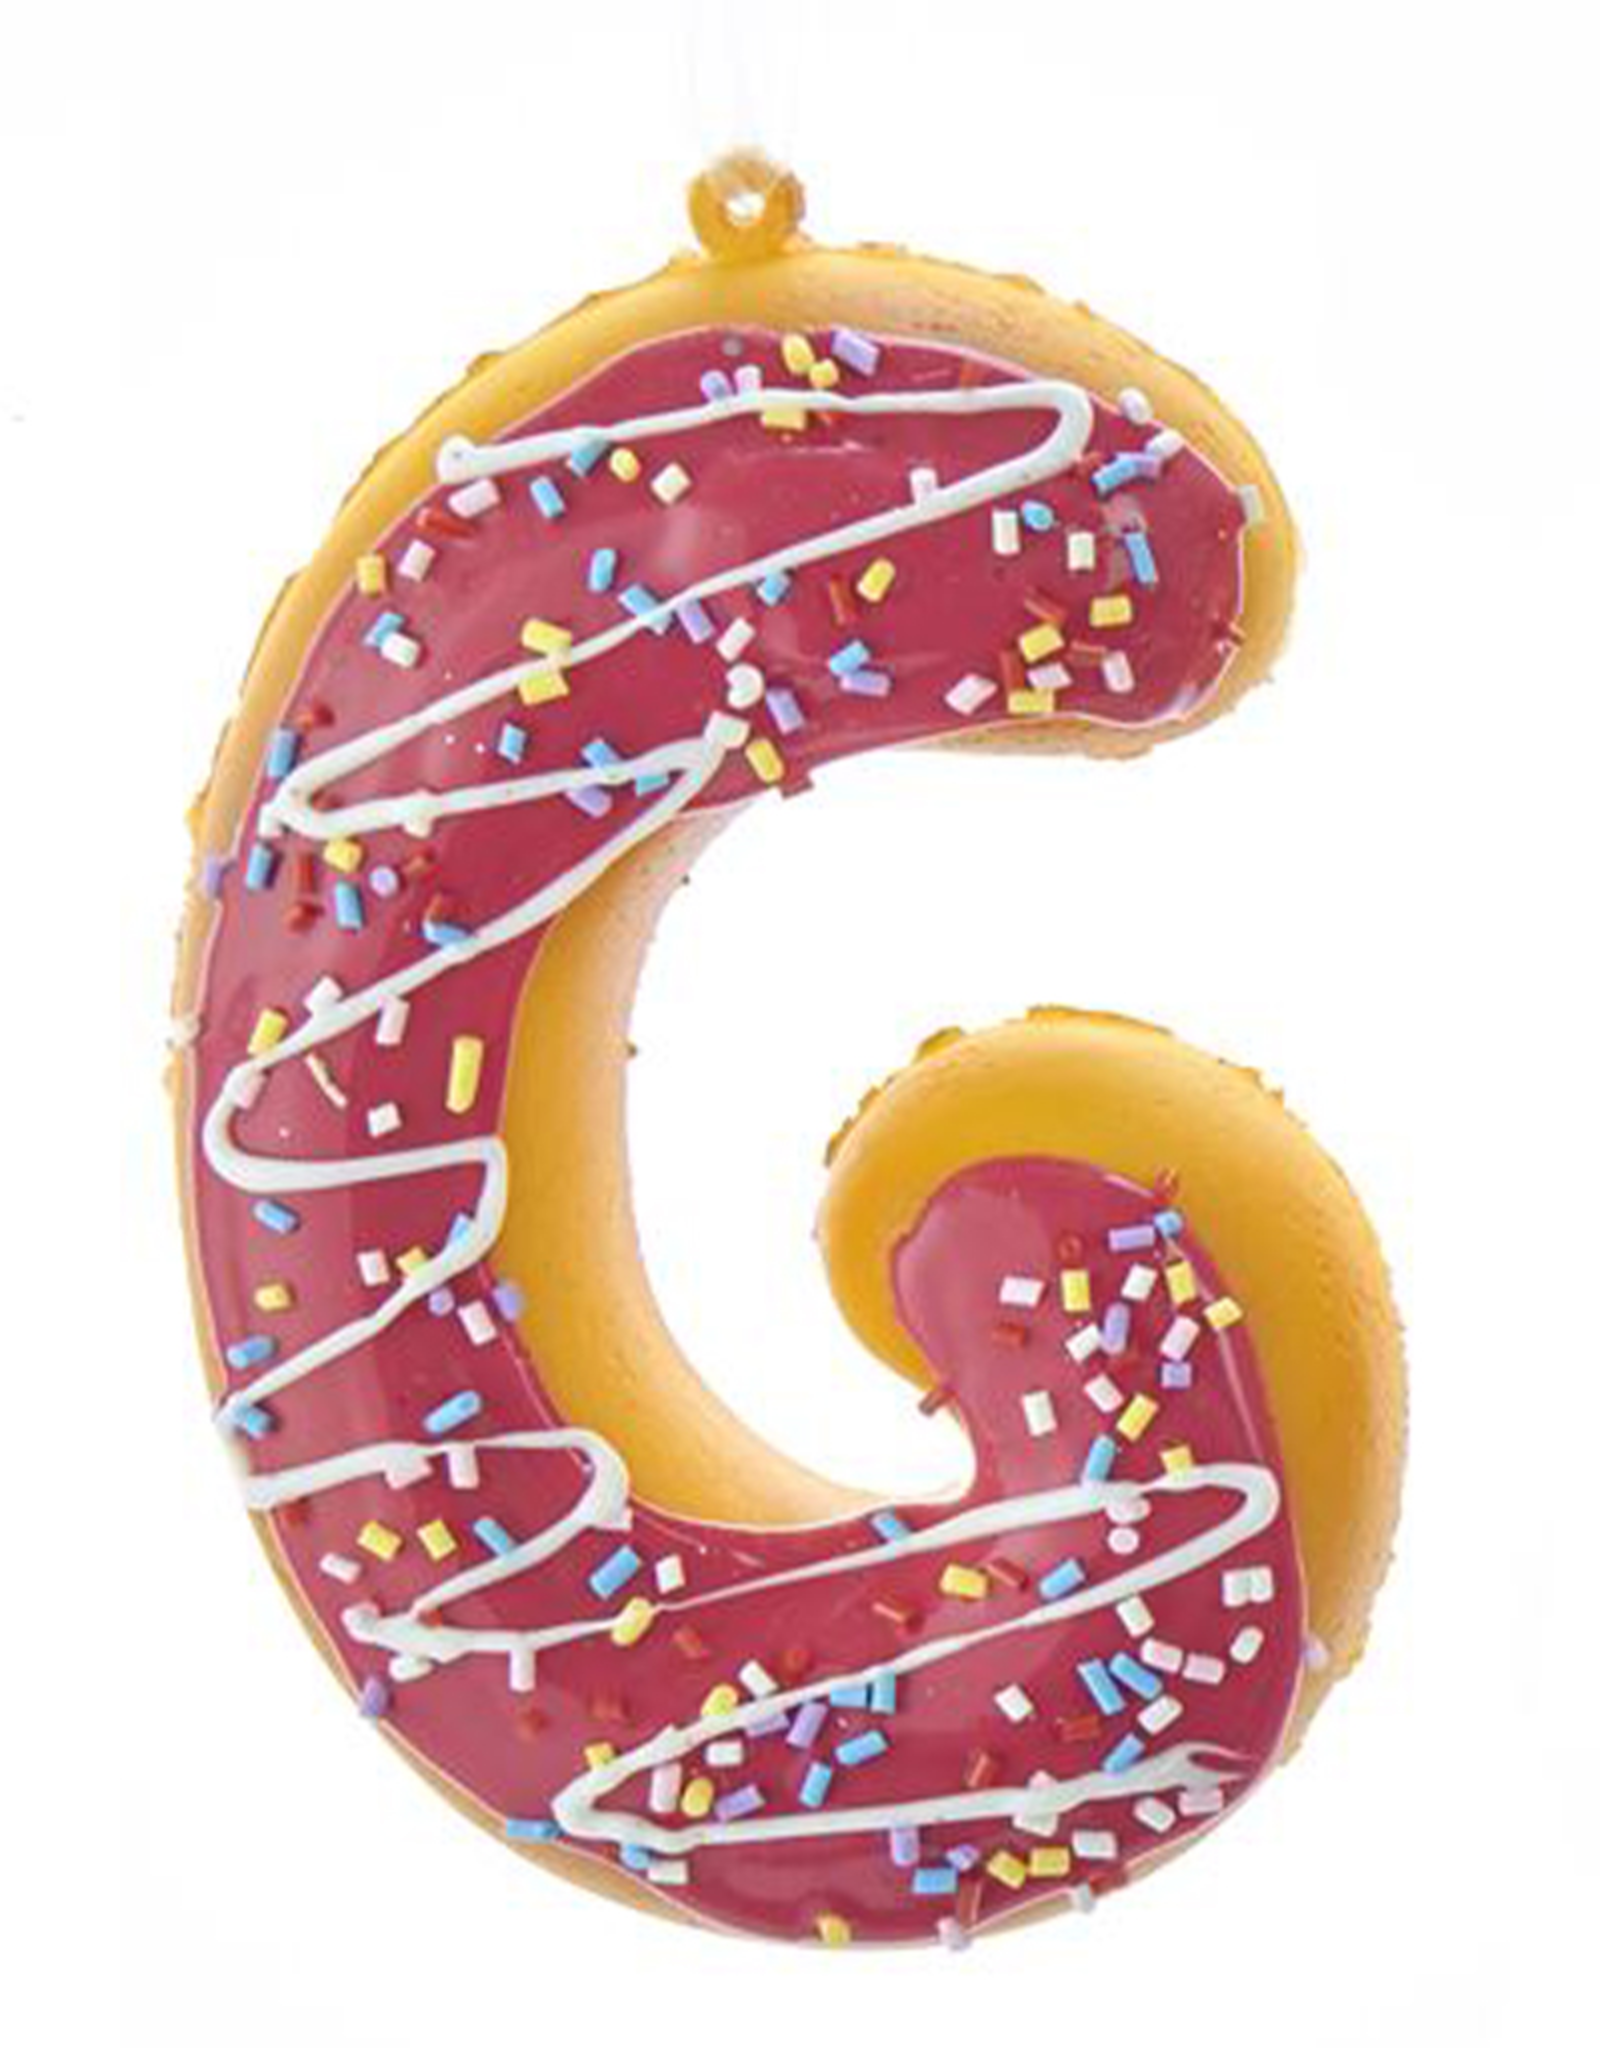 Kurt Adler Squeezable Donut Letter Ornament Initial G